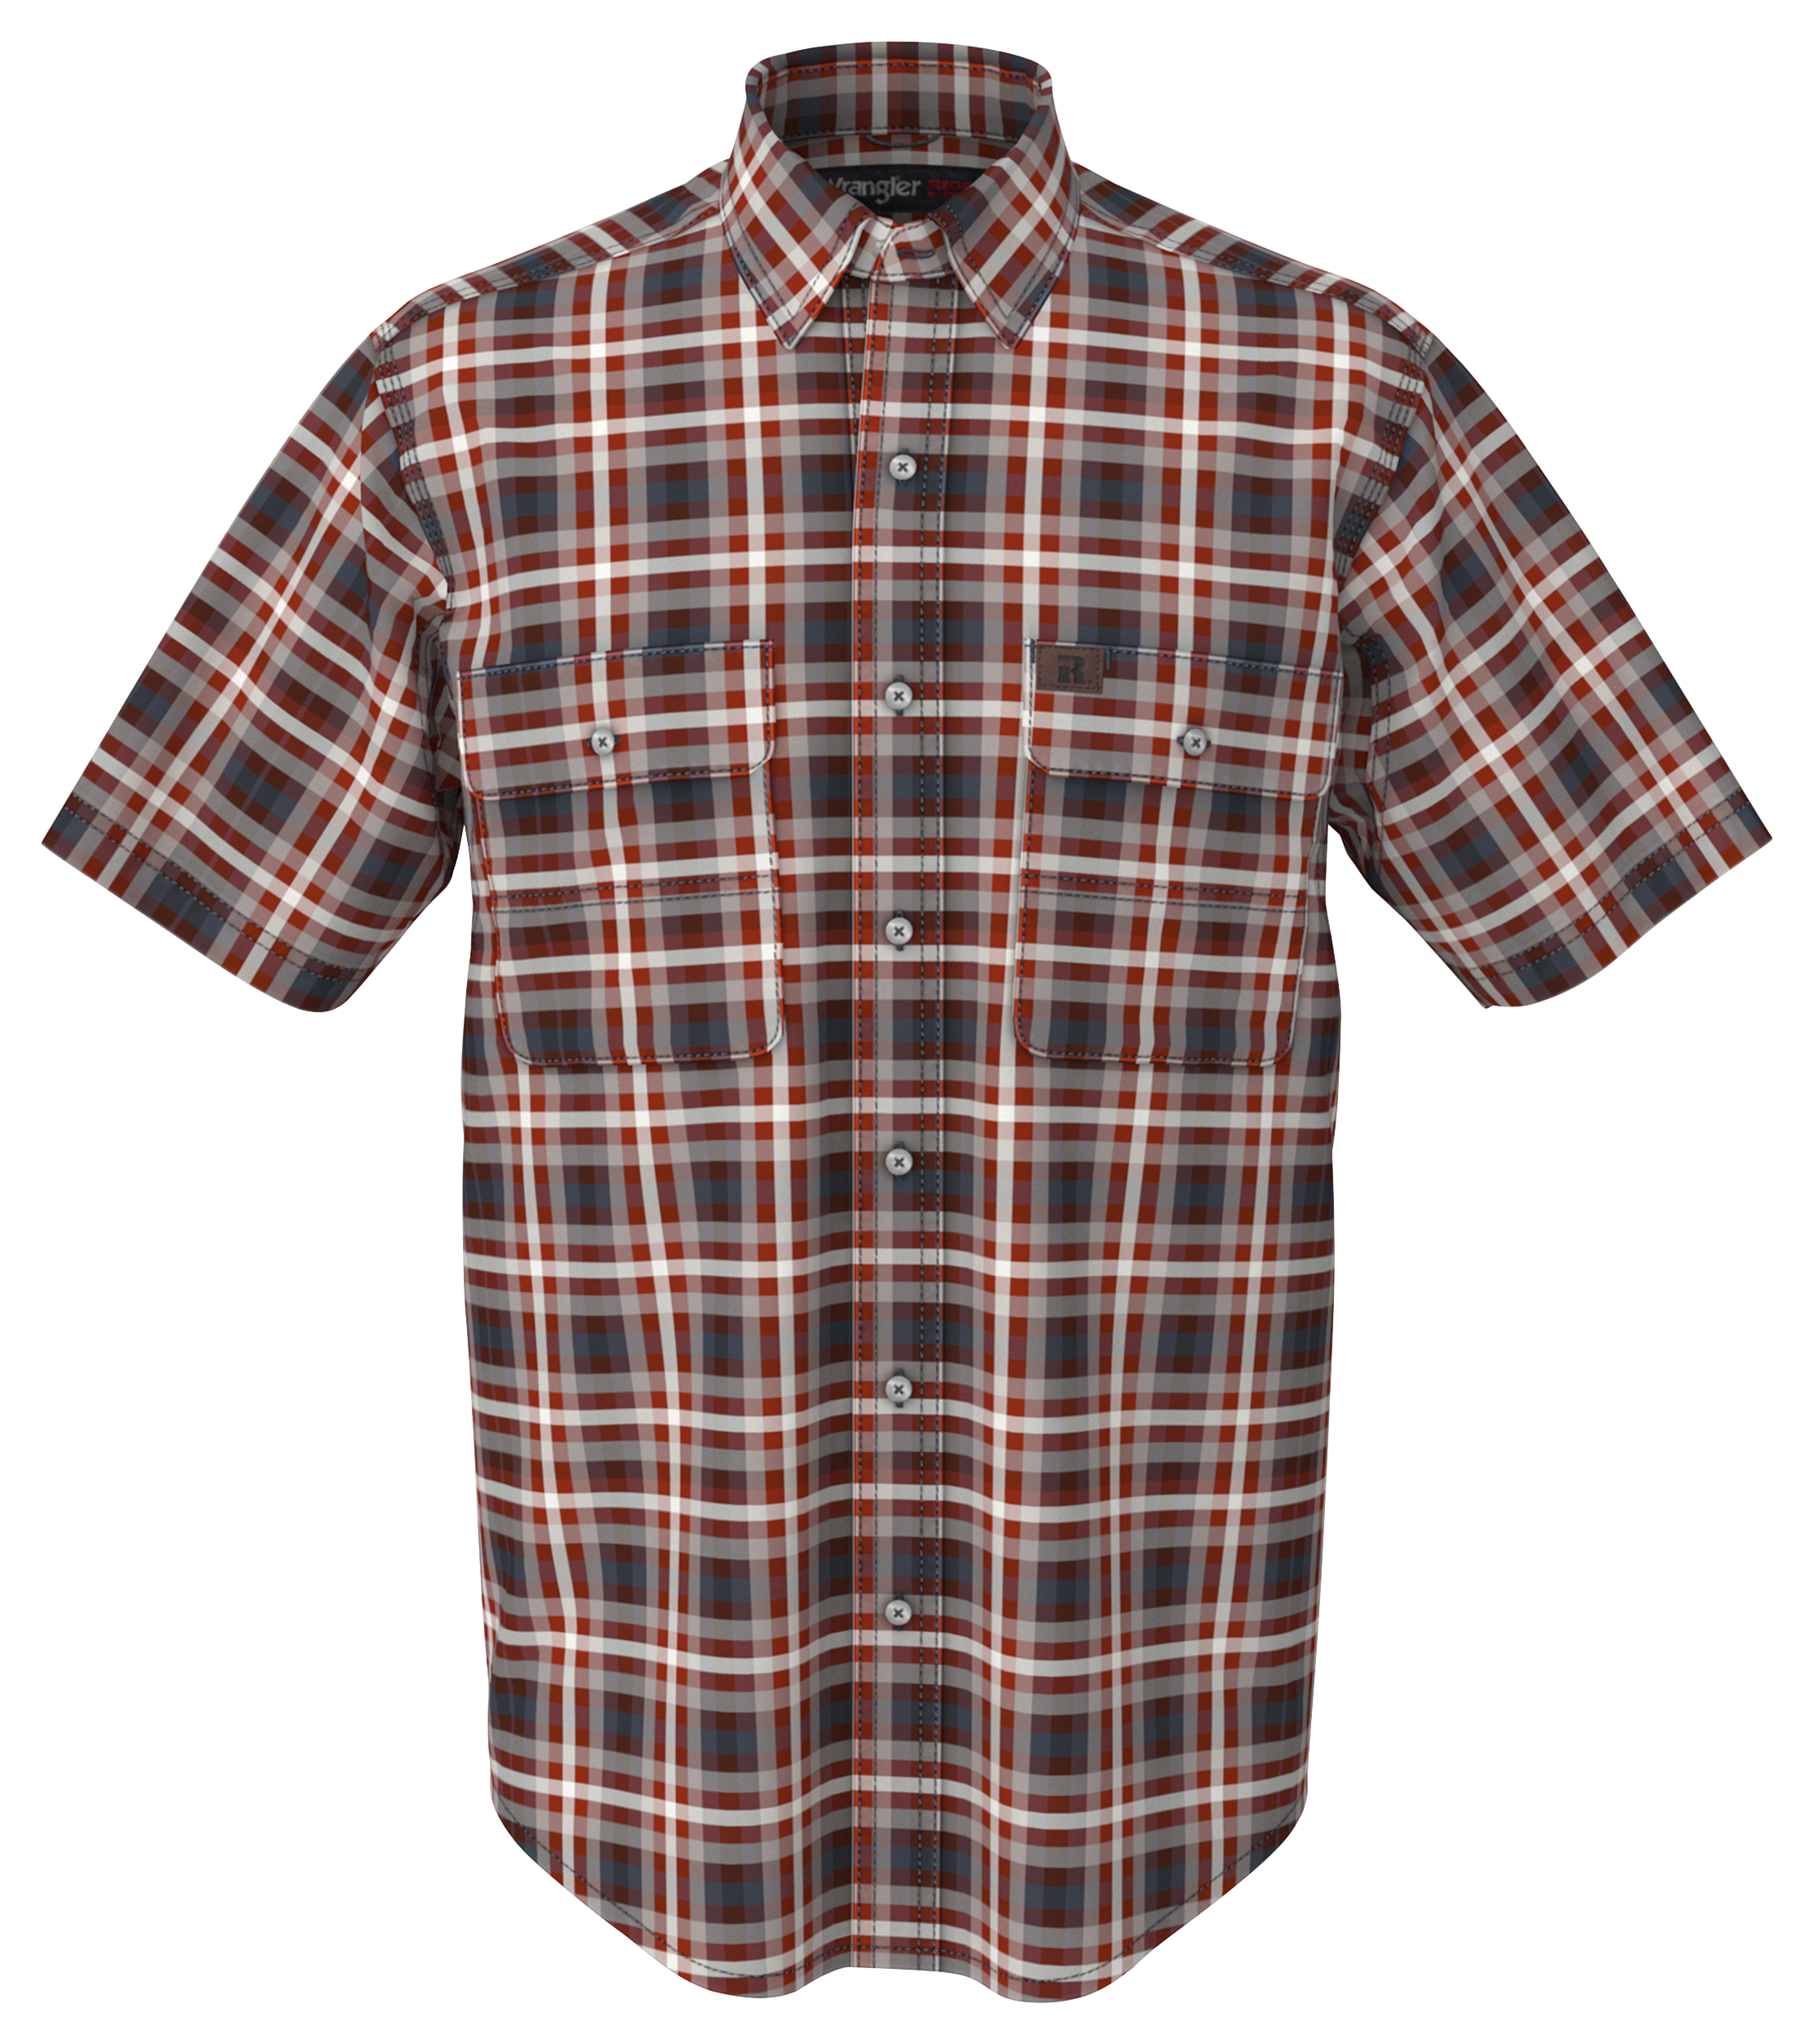 Wrangler Foreman Plaid Short-Sleeve Work Shirt for Men - Blue/Red Plaid - S